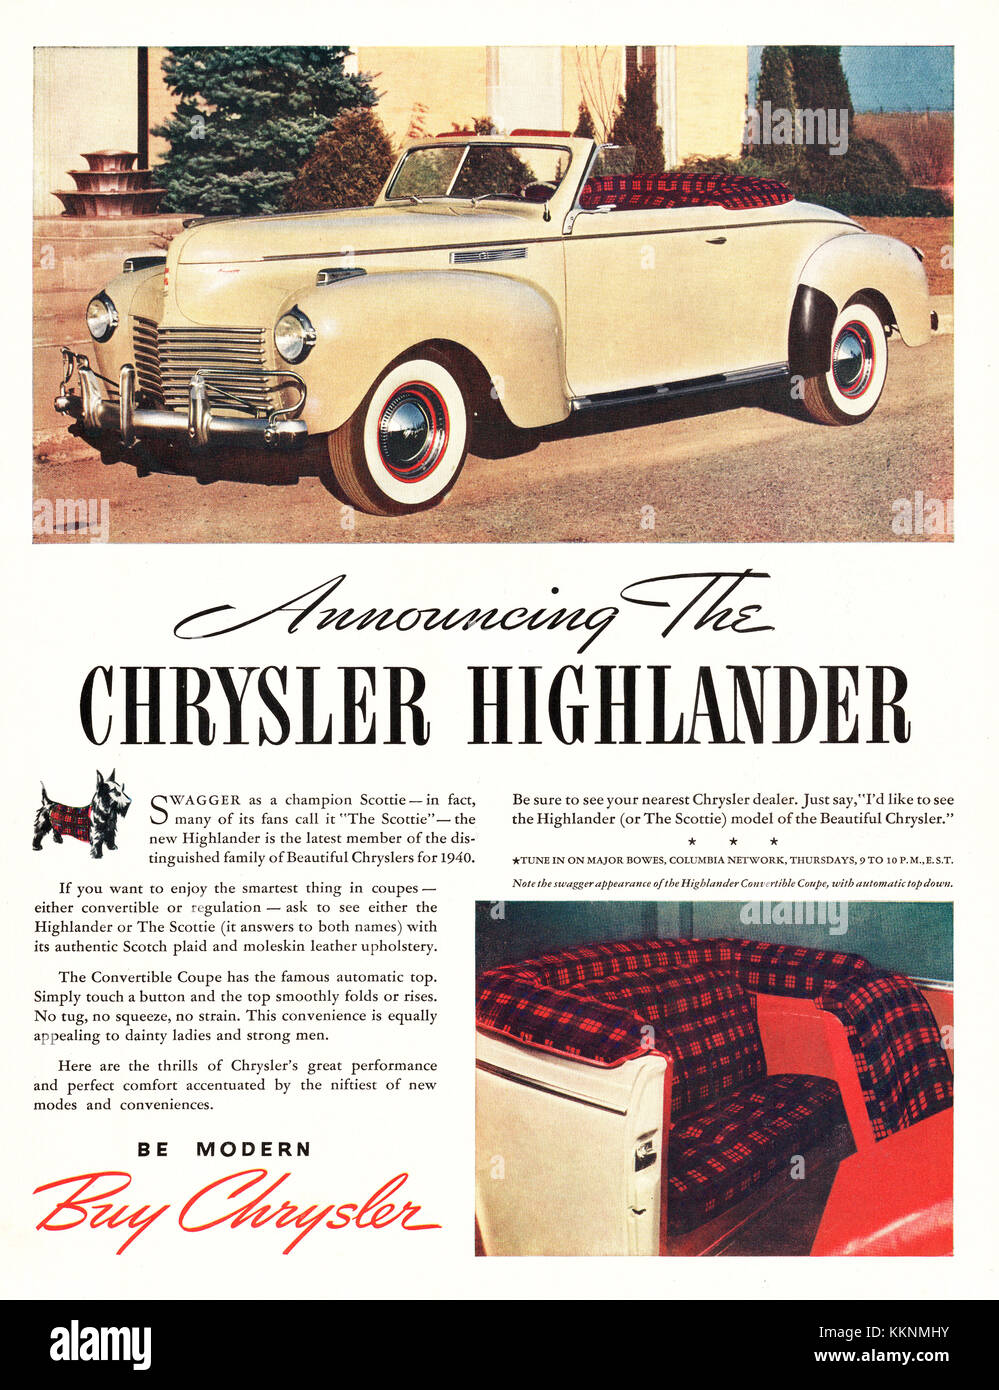 1940 U.S. Magazine Chrysler Highlander Advert Stock Photo